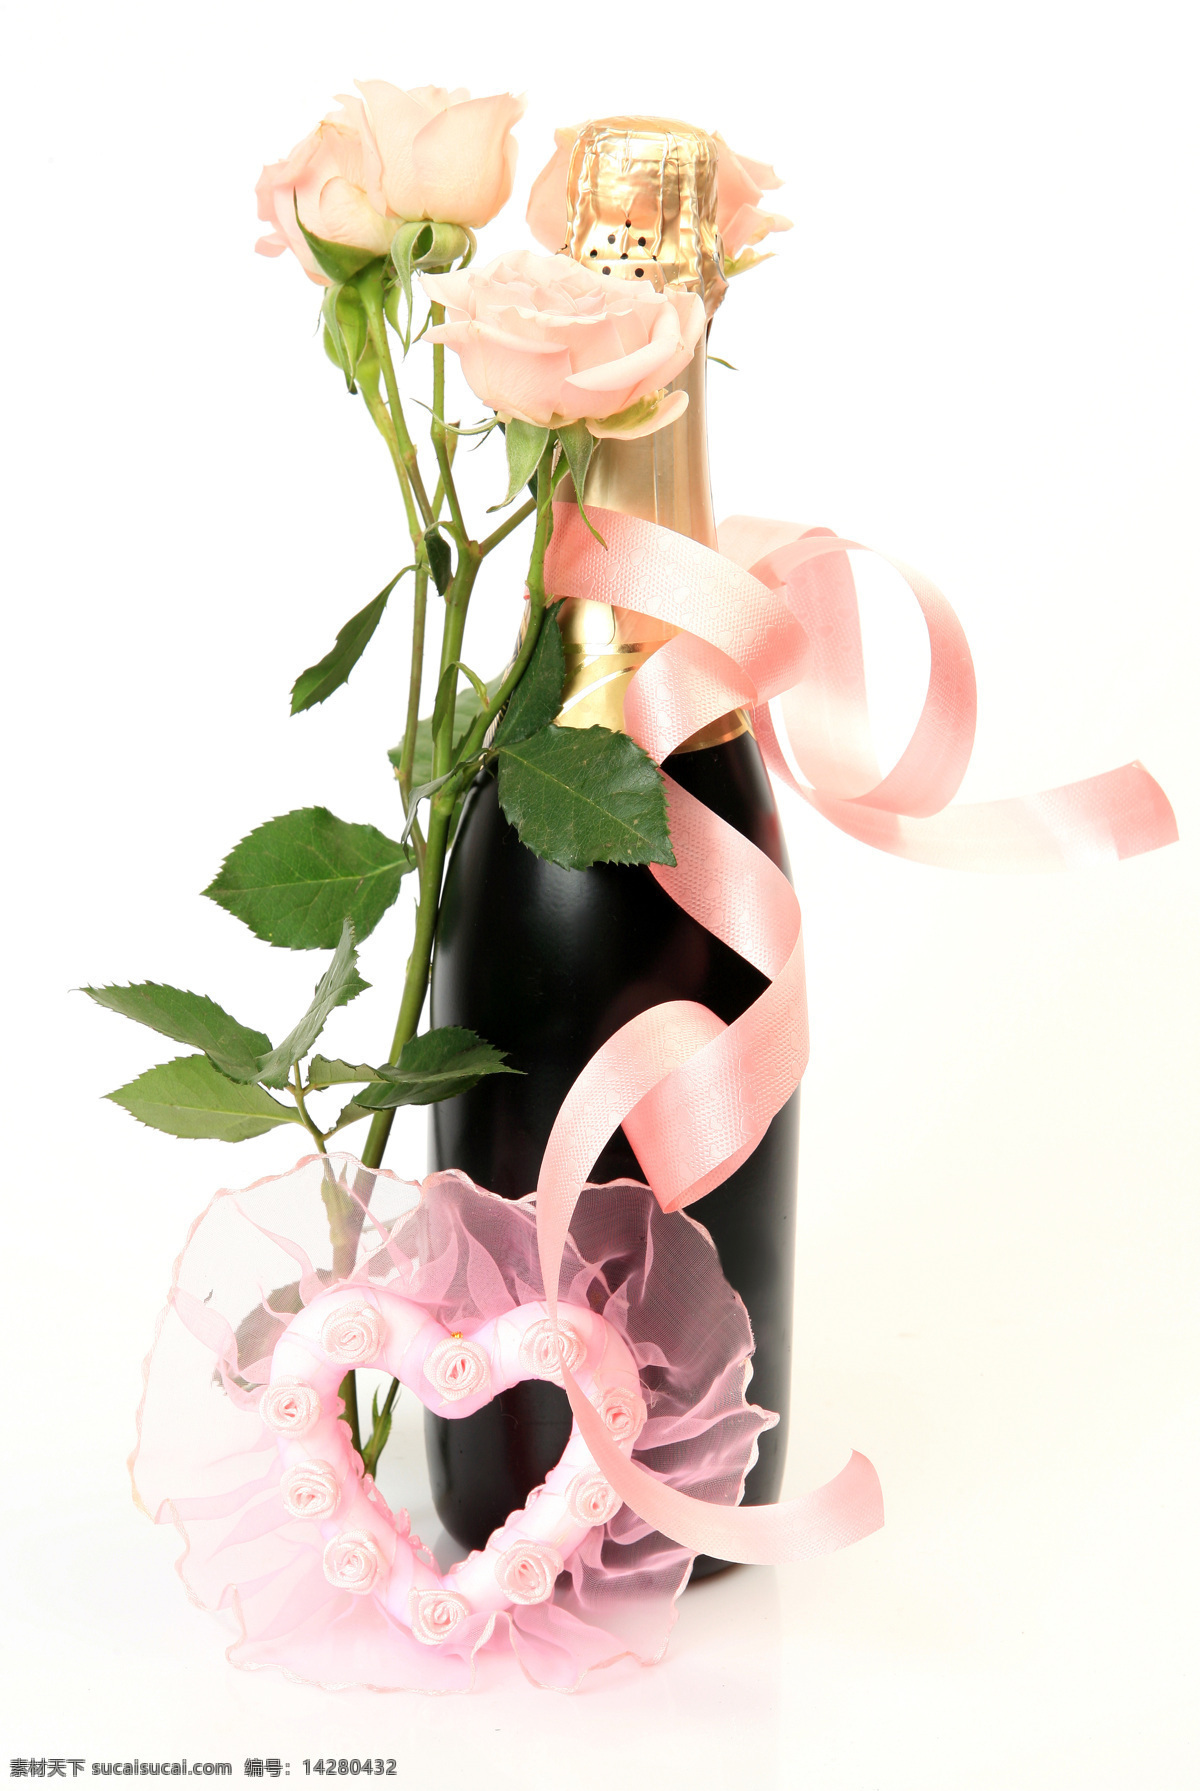 玫瑰花 香槟 丝带 鲜花 花朵 温馨浪漫 花草树木 生物世界